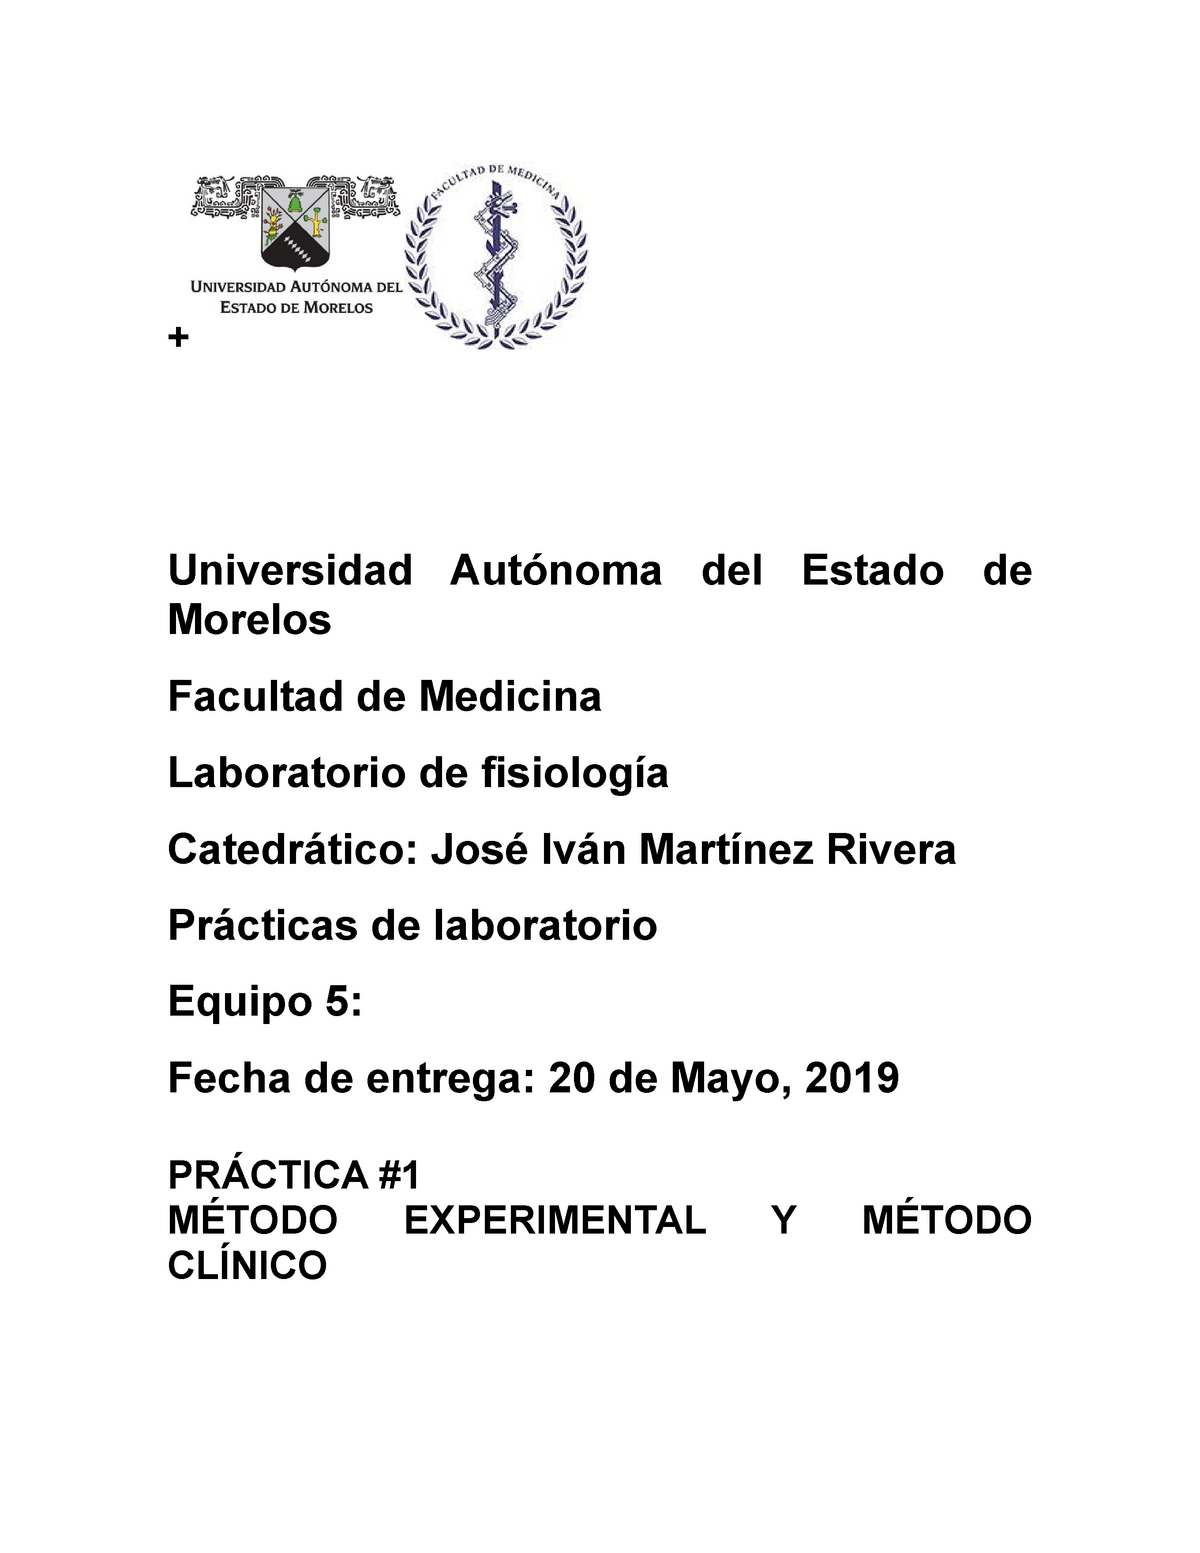 Practicas Lab 2019 Laboratorio De Fisiologia 1 Universidad Autónoma Del Estado De Morelos 1624